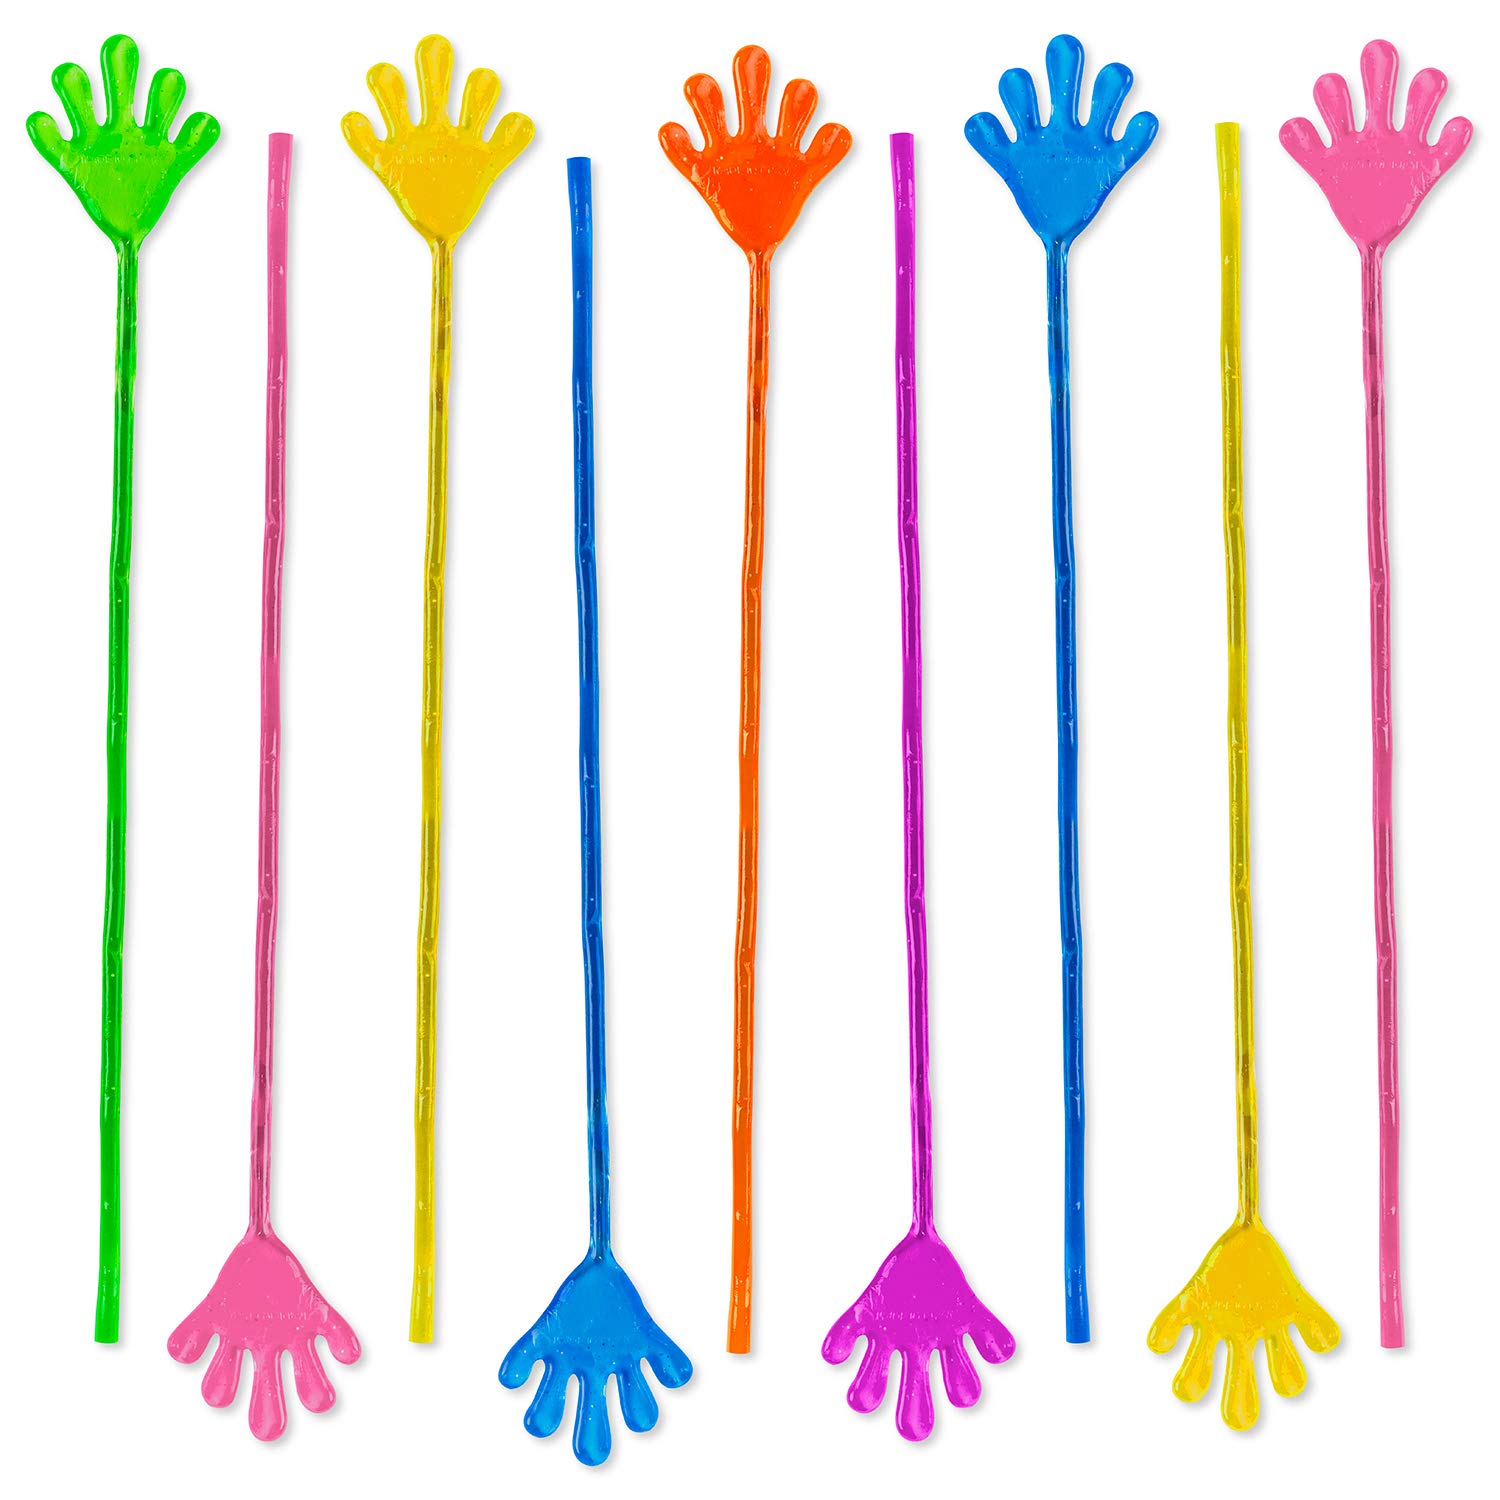 Vinyl Glitter Mini Sticky Hands Toys for Children Party Favors, Birthdays - 1 1/4